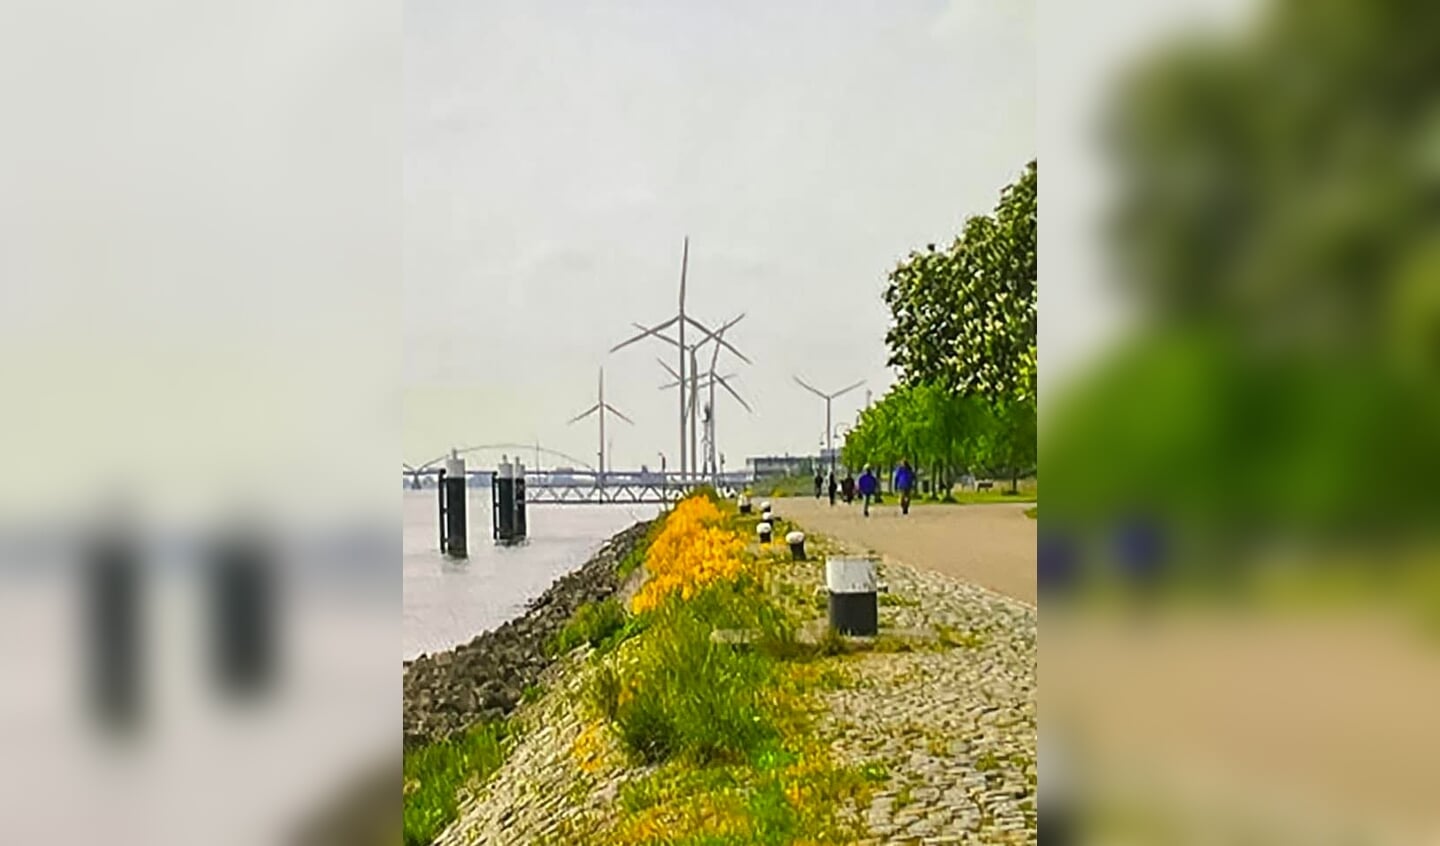 Artist Impression van windturbines bij Avelingen uit onderzoek van Bosch & Van Rijn